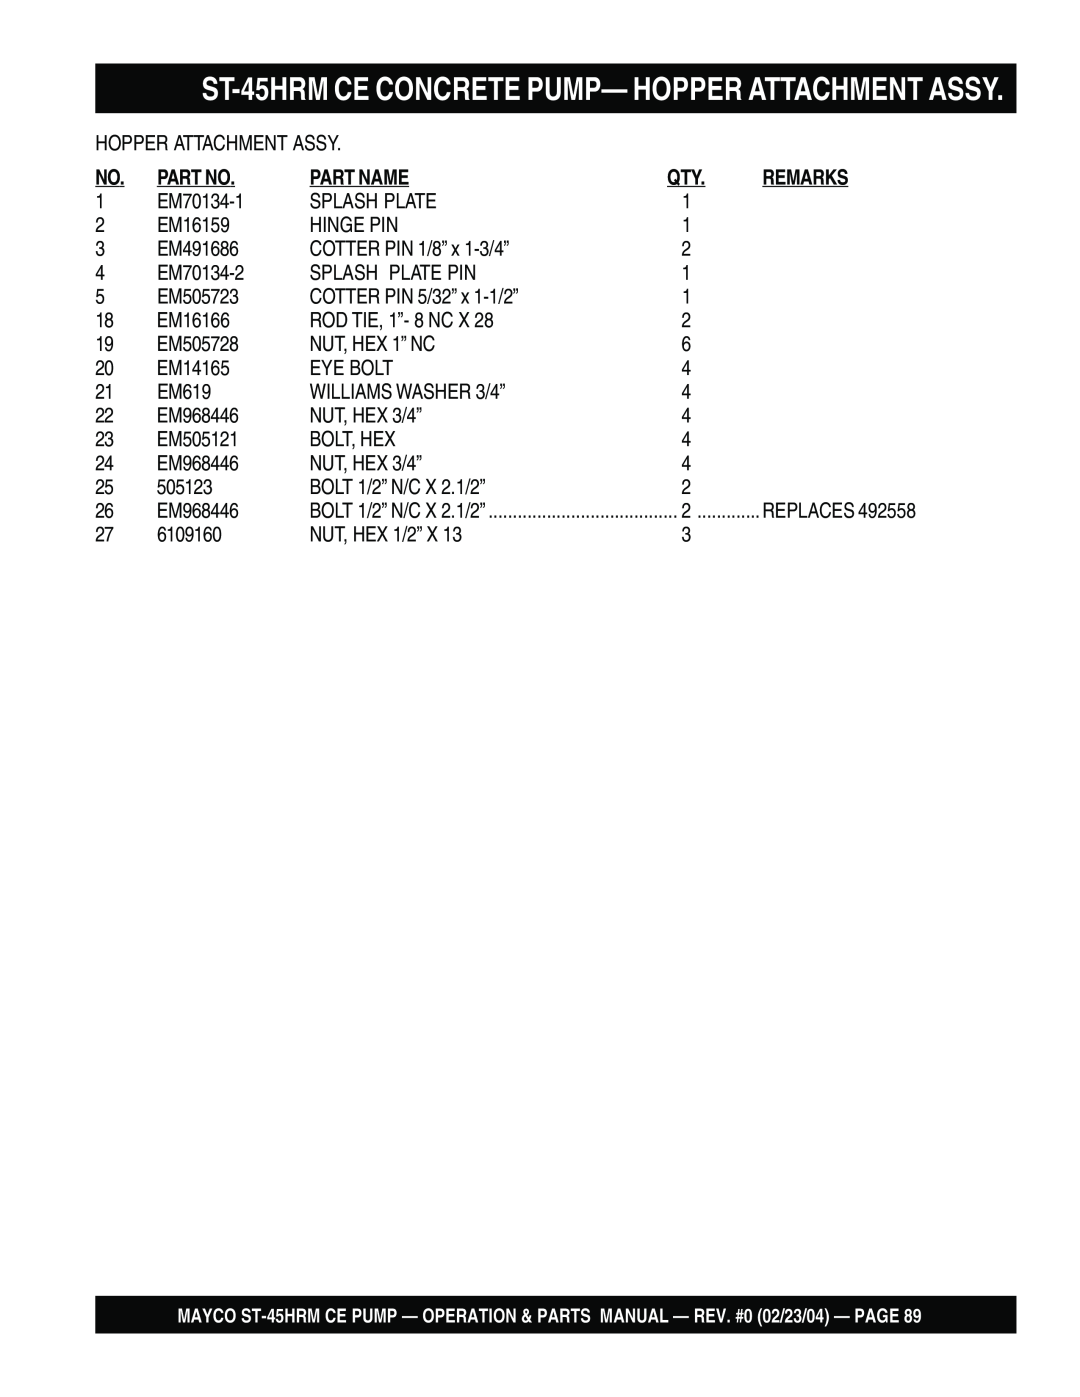 Multiquip ST-45HRM CE manual ST-45HRMCE CONCRETE PUMP— HOPPER ATTACHMENT ASSY, Part No, Part Name, Remarks 